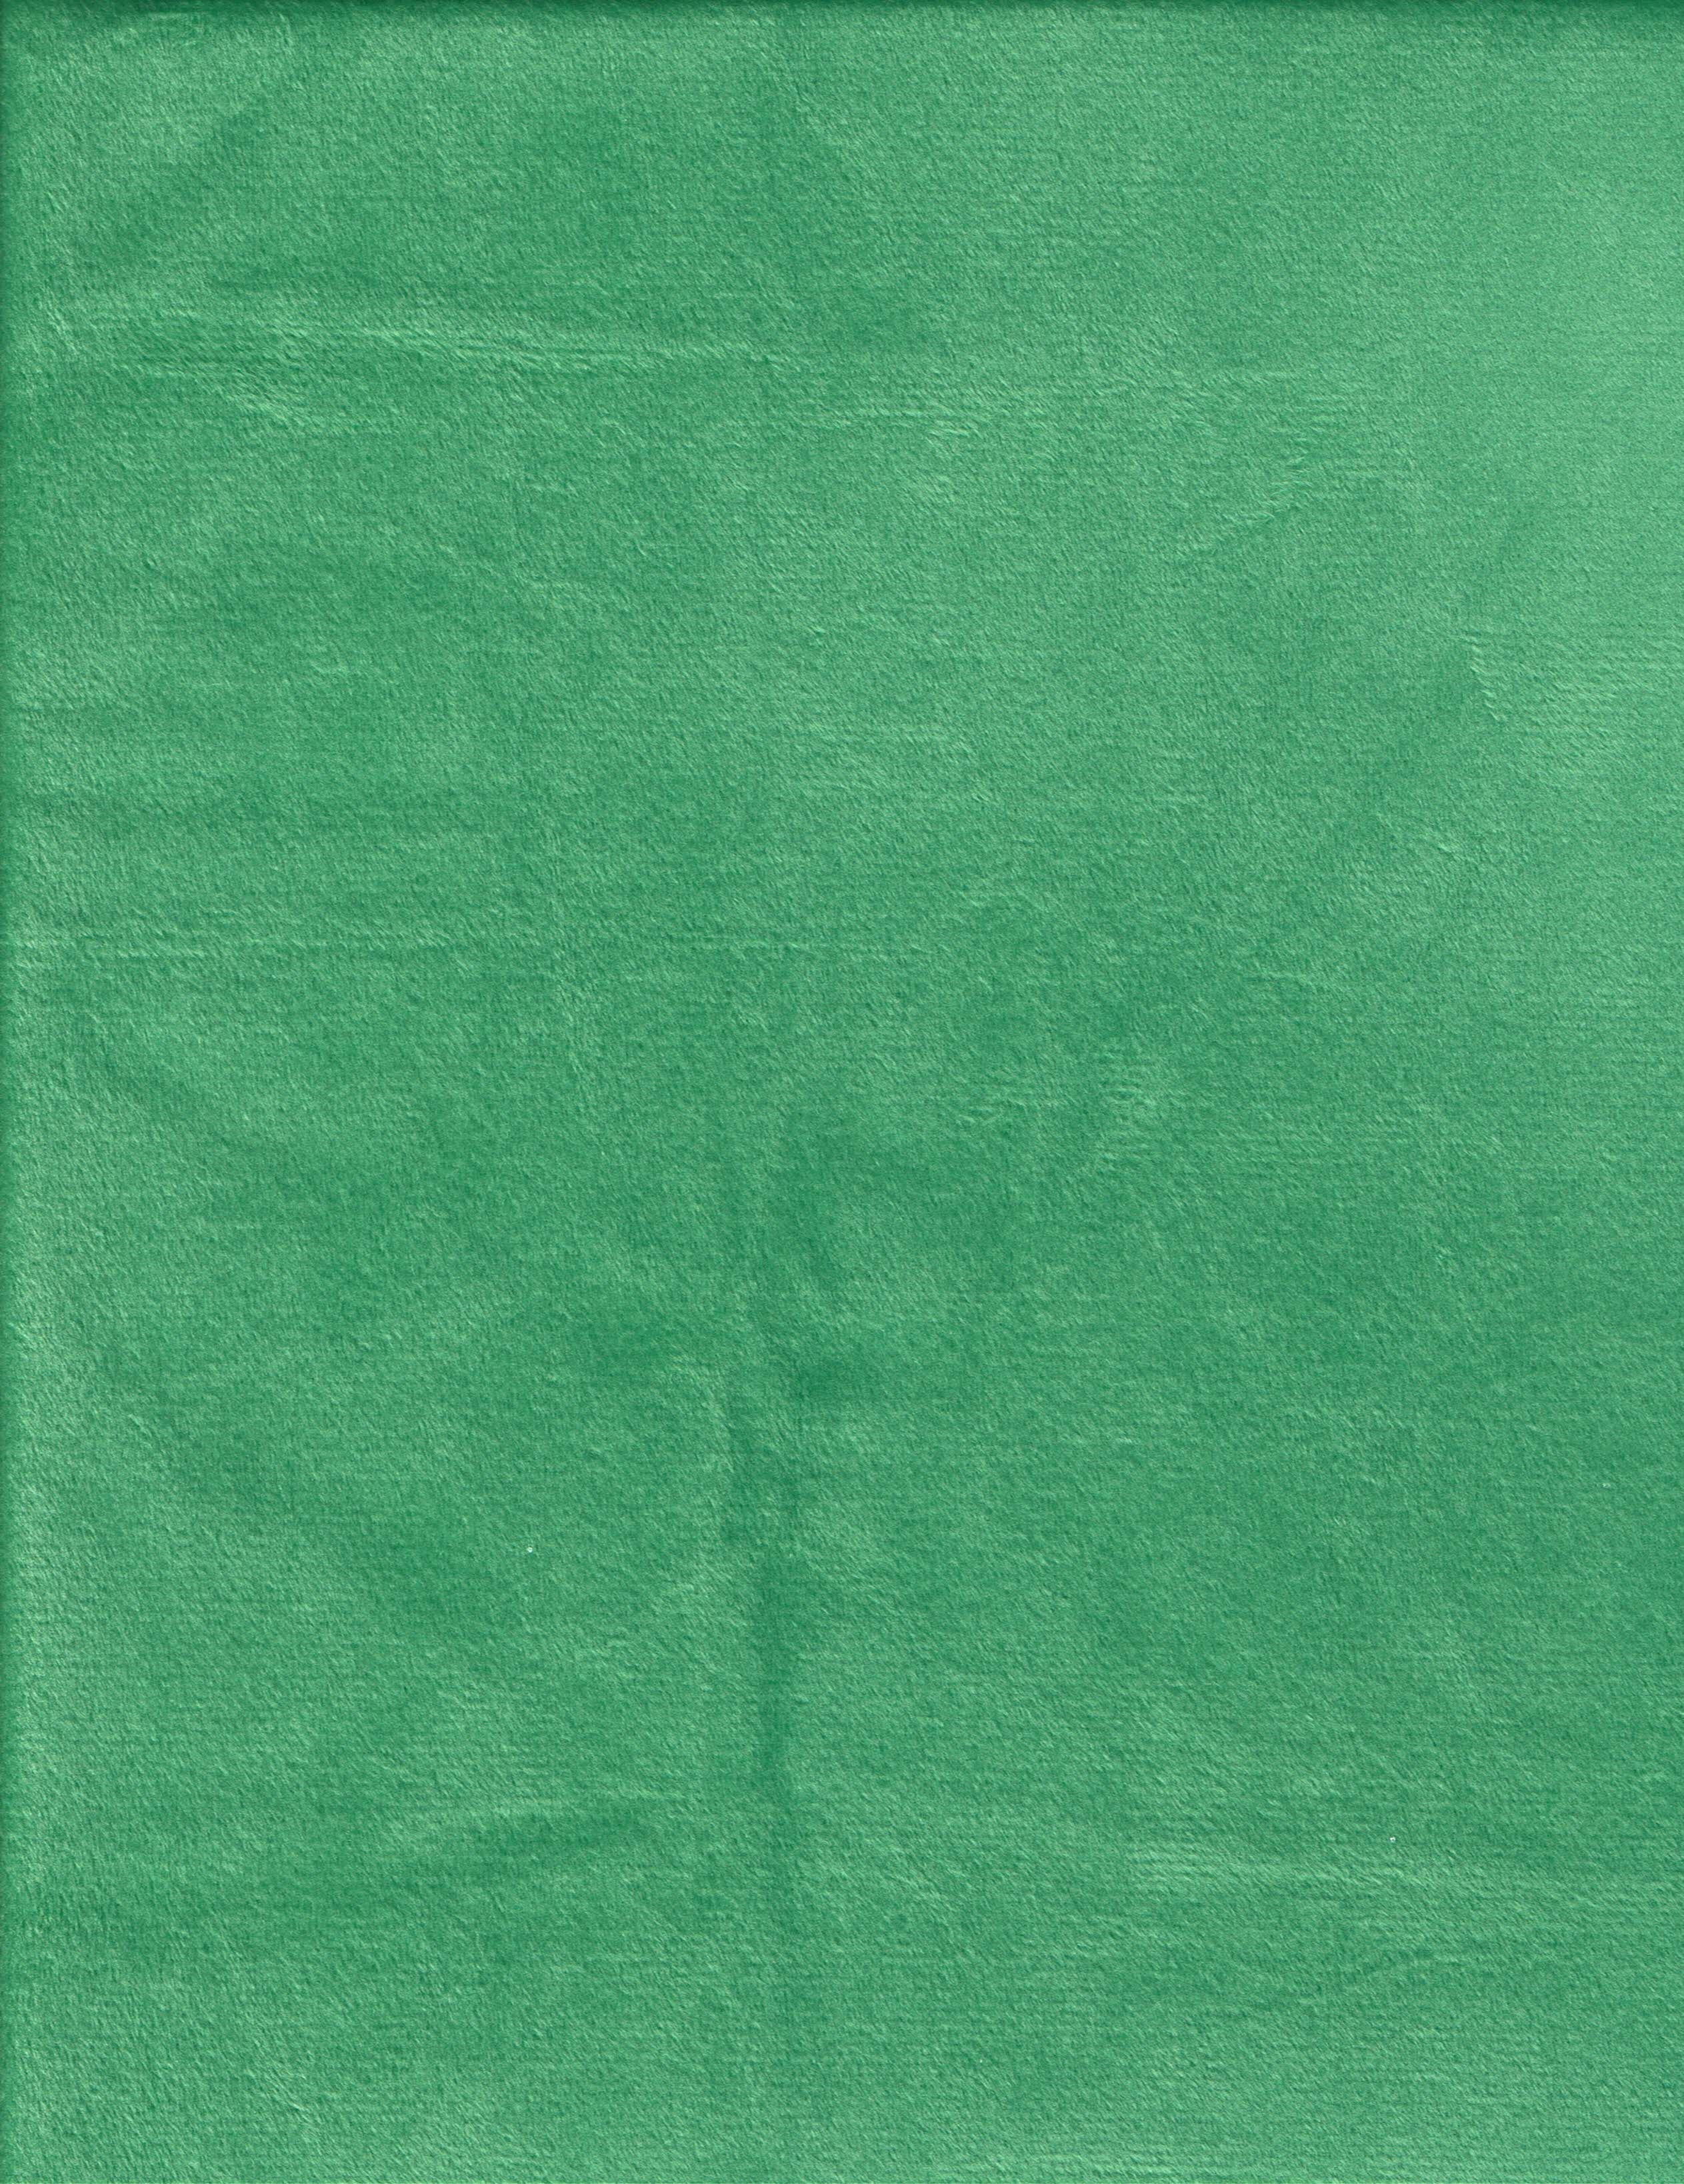 Sea Foam Green – Turtle Towels!